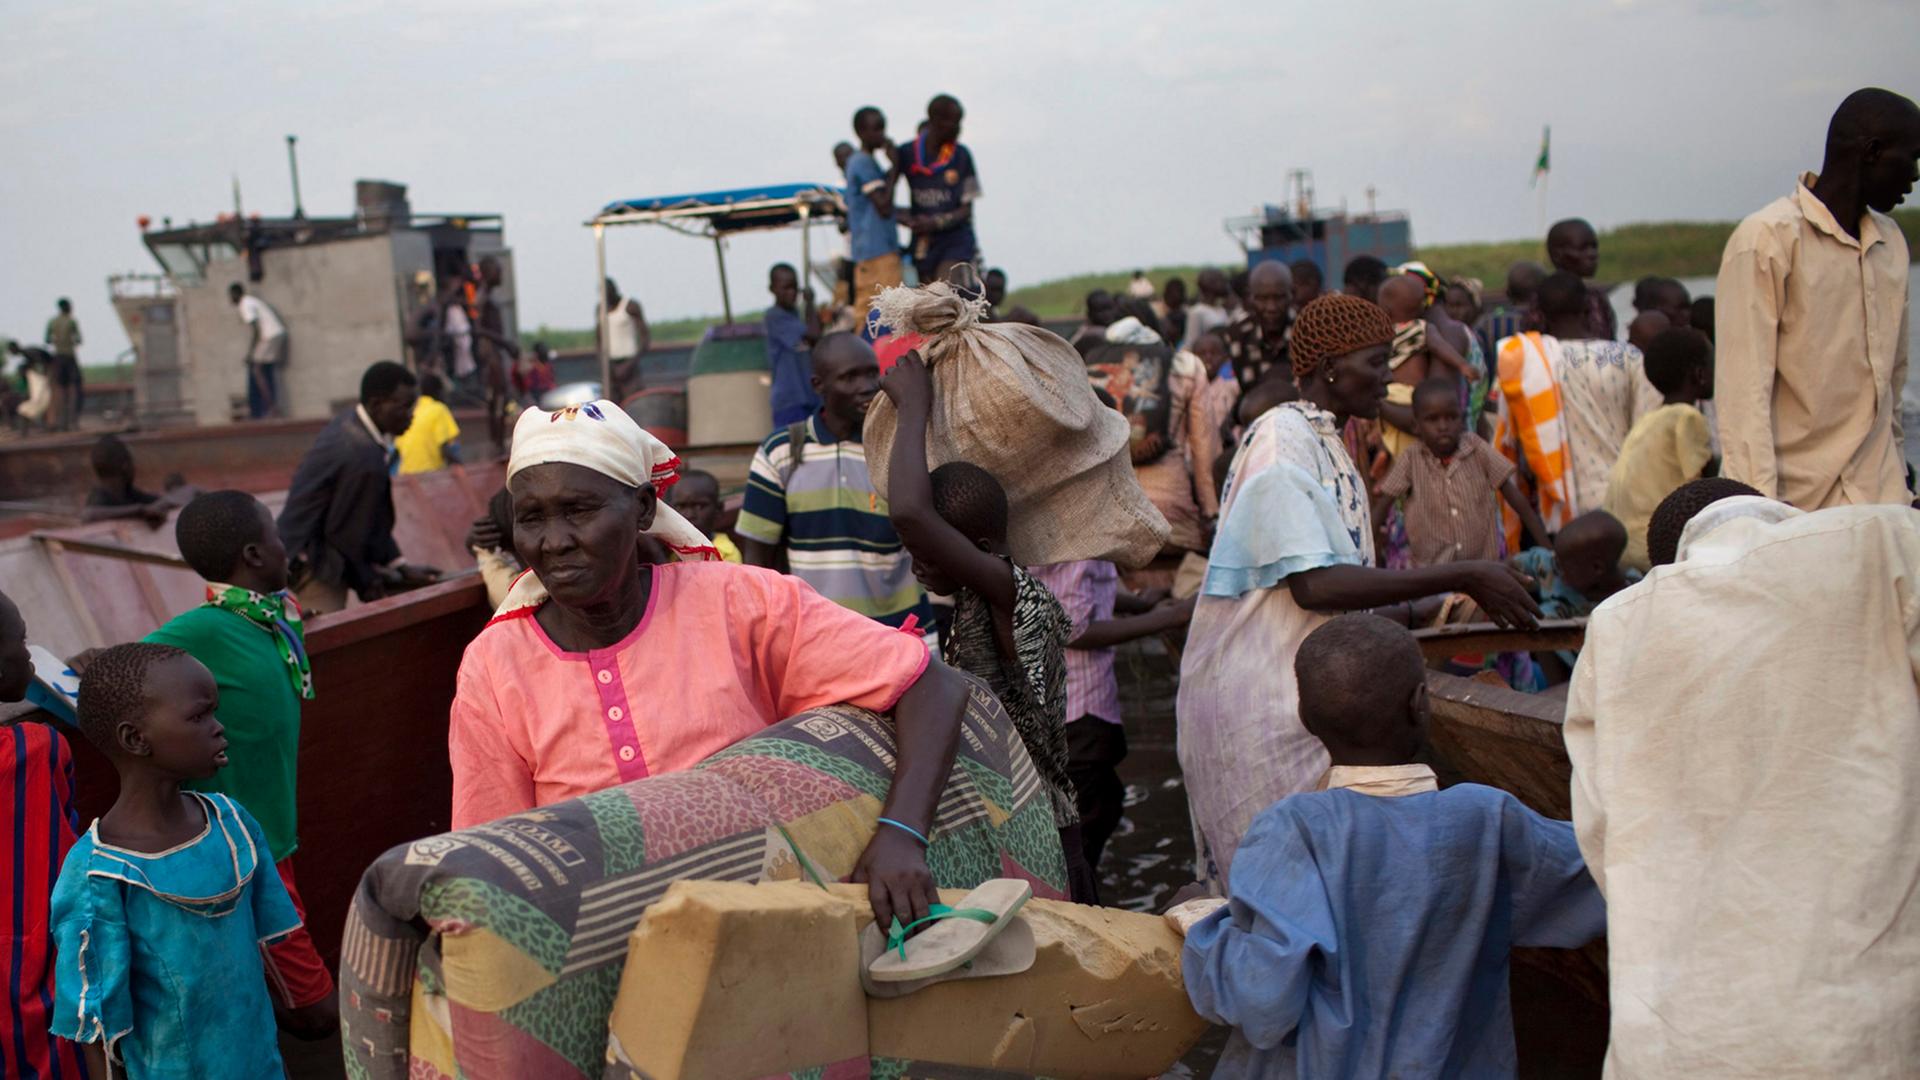 Südsudaneische Flüchtlinge (Volksgruppe der Dinkas) sind mit ihren Habseligkeiten unterwegs.